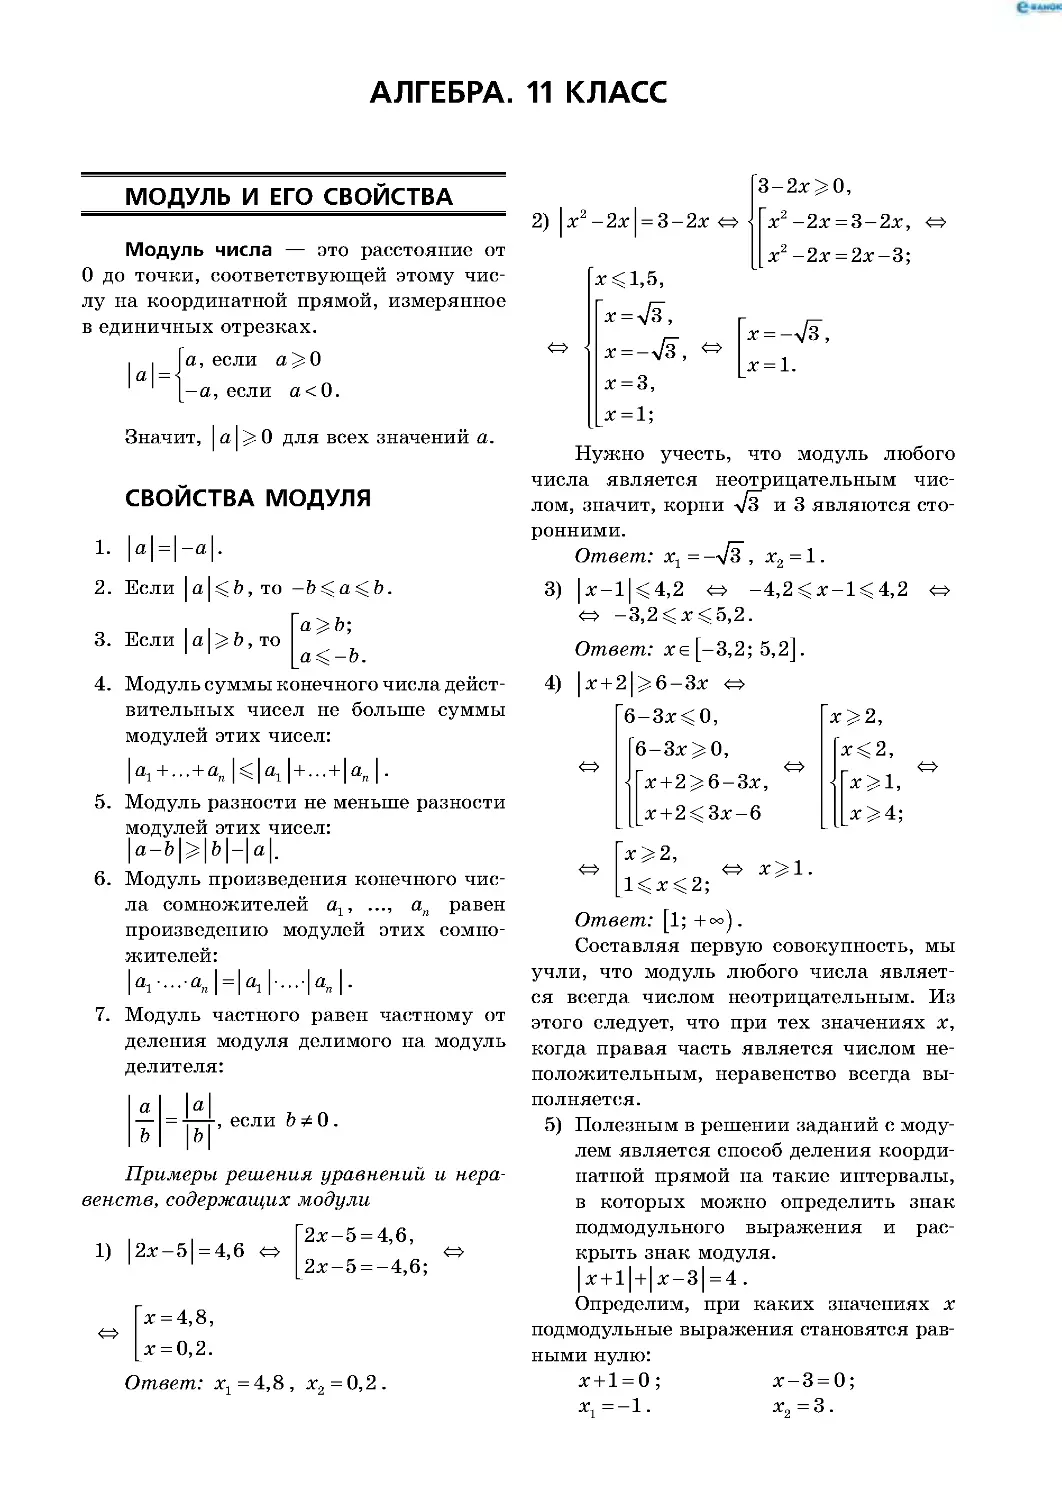 Алгебра. 11 класс
Модуль и его свойства